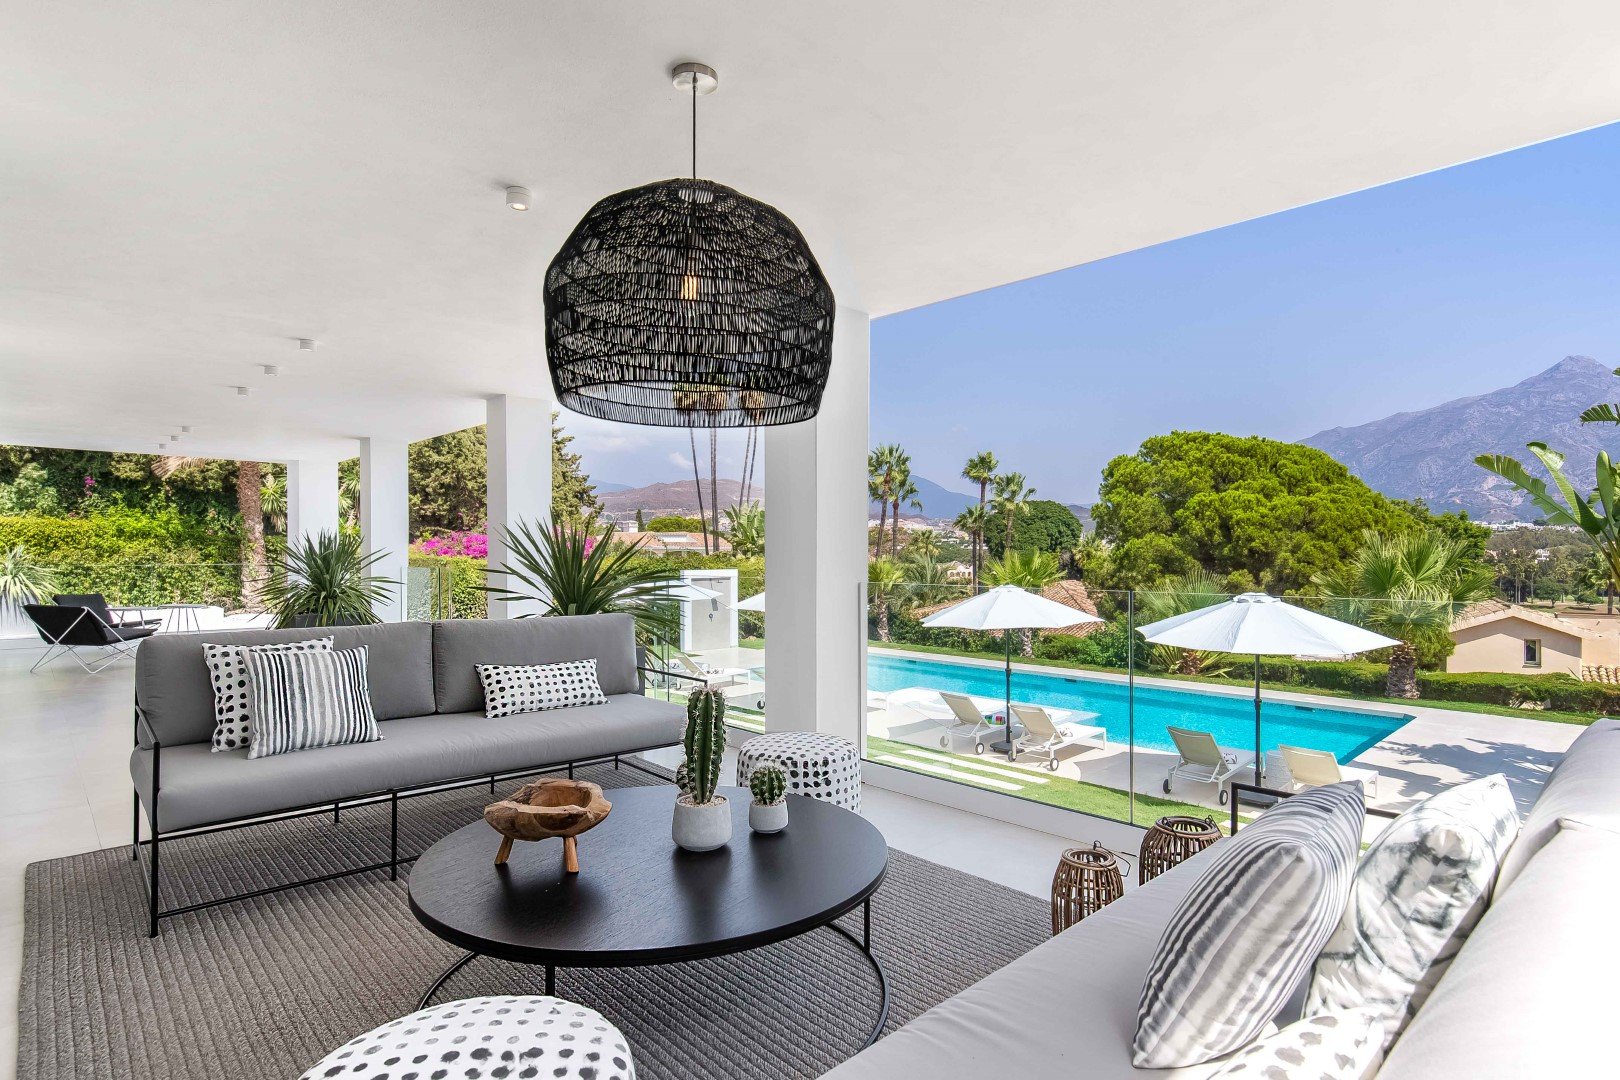 Costa-del-sol-marbella-luxury-holiday-villa-rentals.jpg